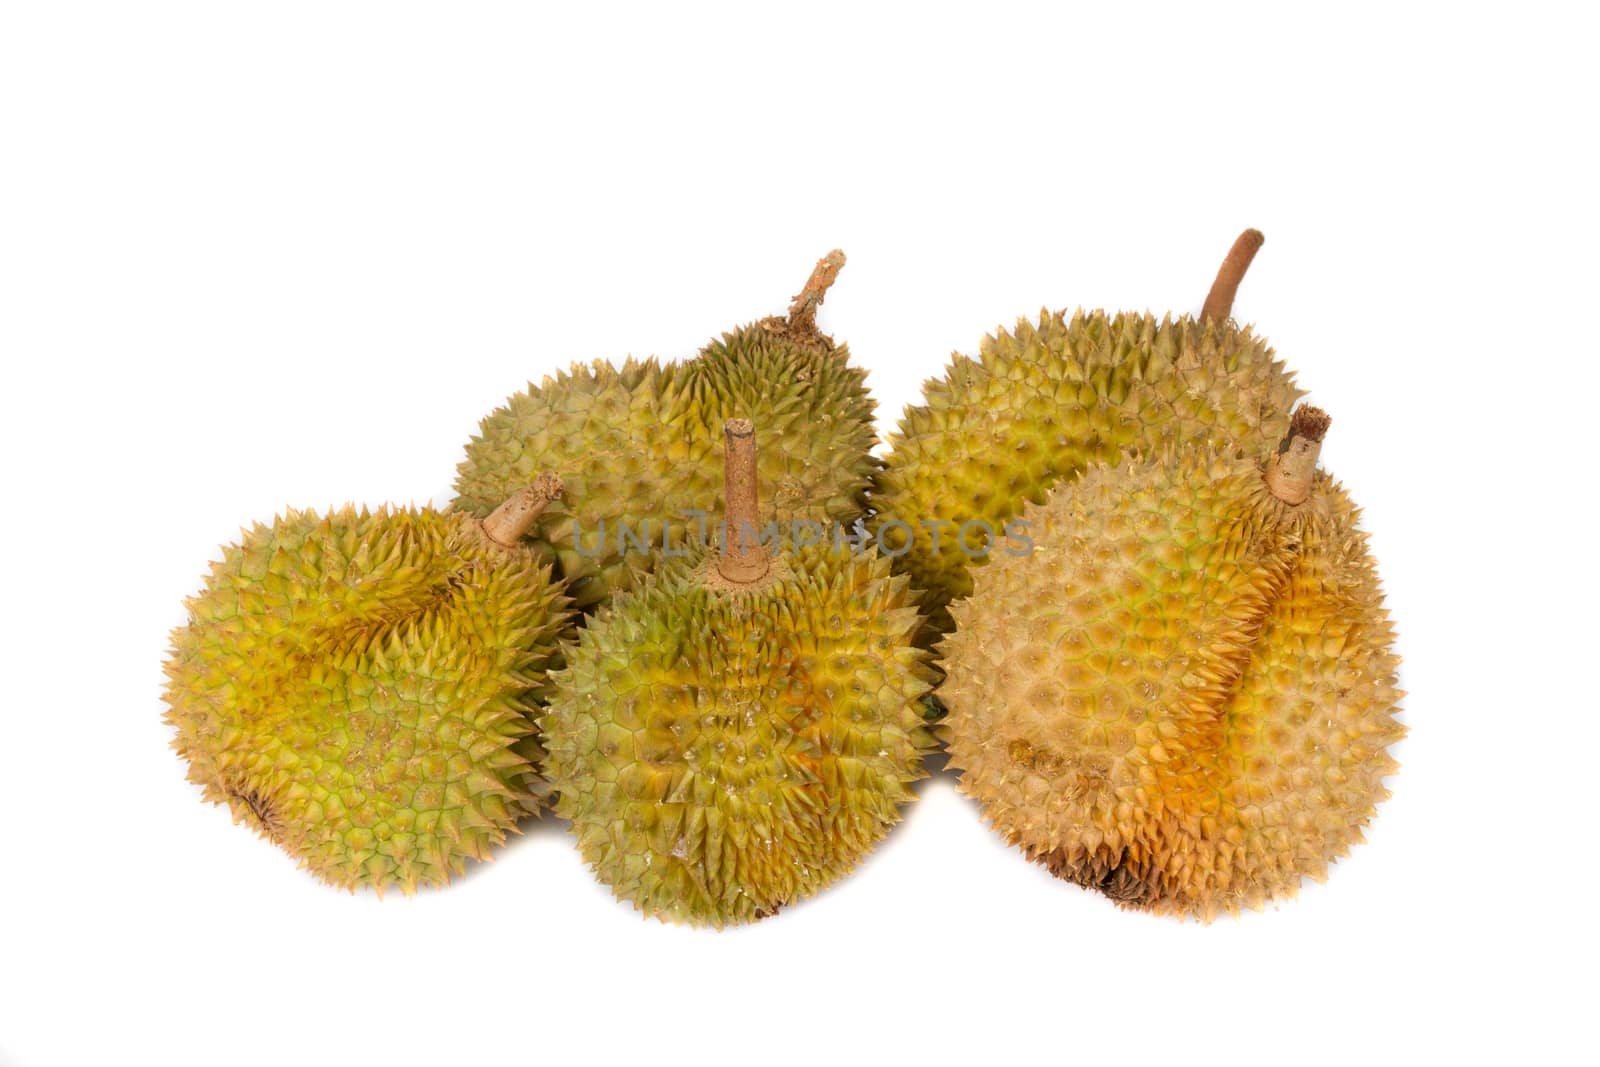 Malaysia tropical fruits durian in studio shots.